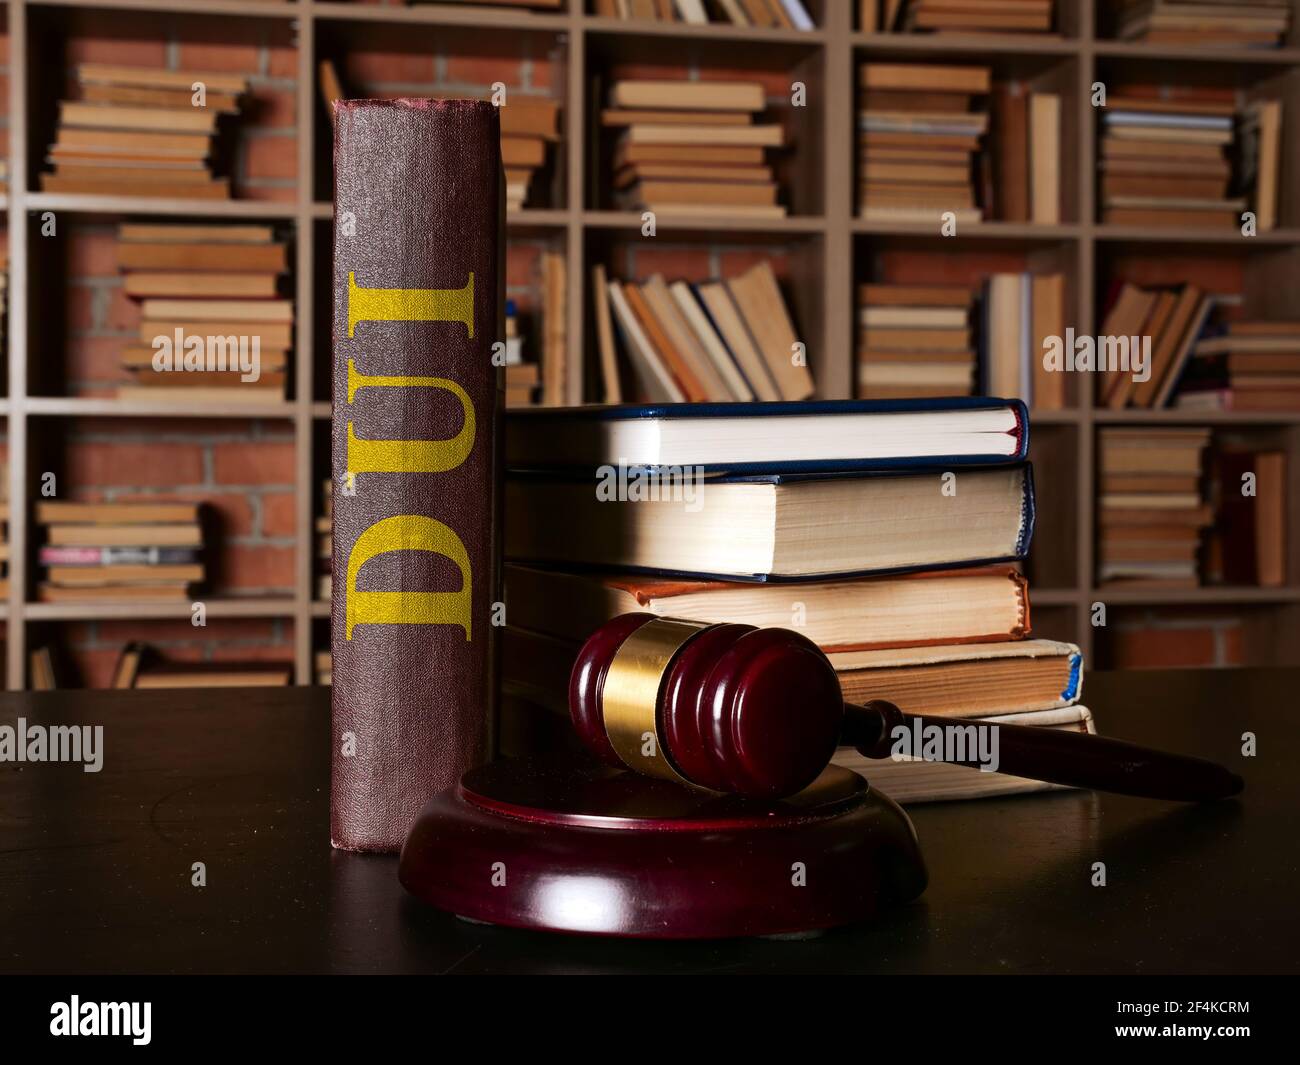 DUI Gesetz oder Fahren unter dem Einfluss Buch steht neben dem gavel. Stockfoto